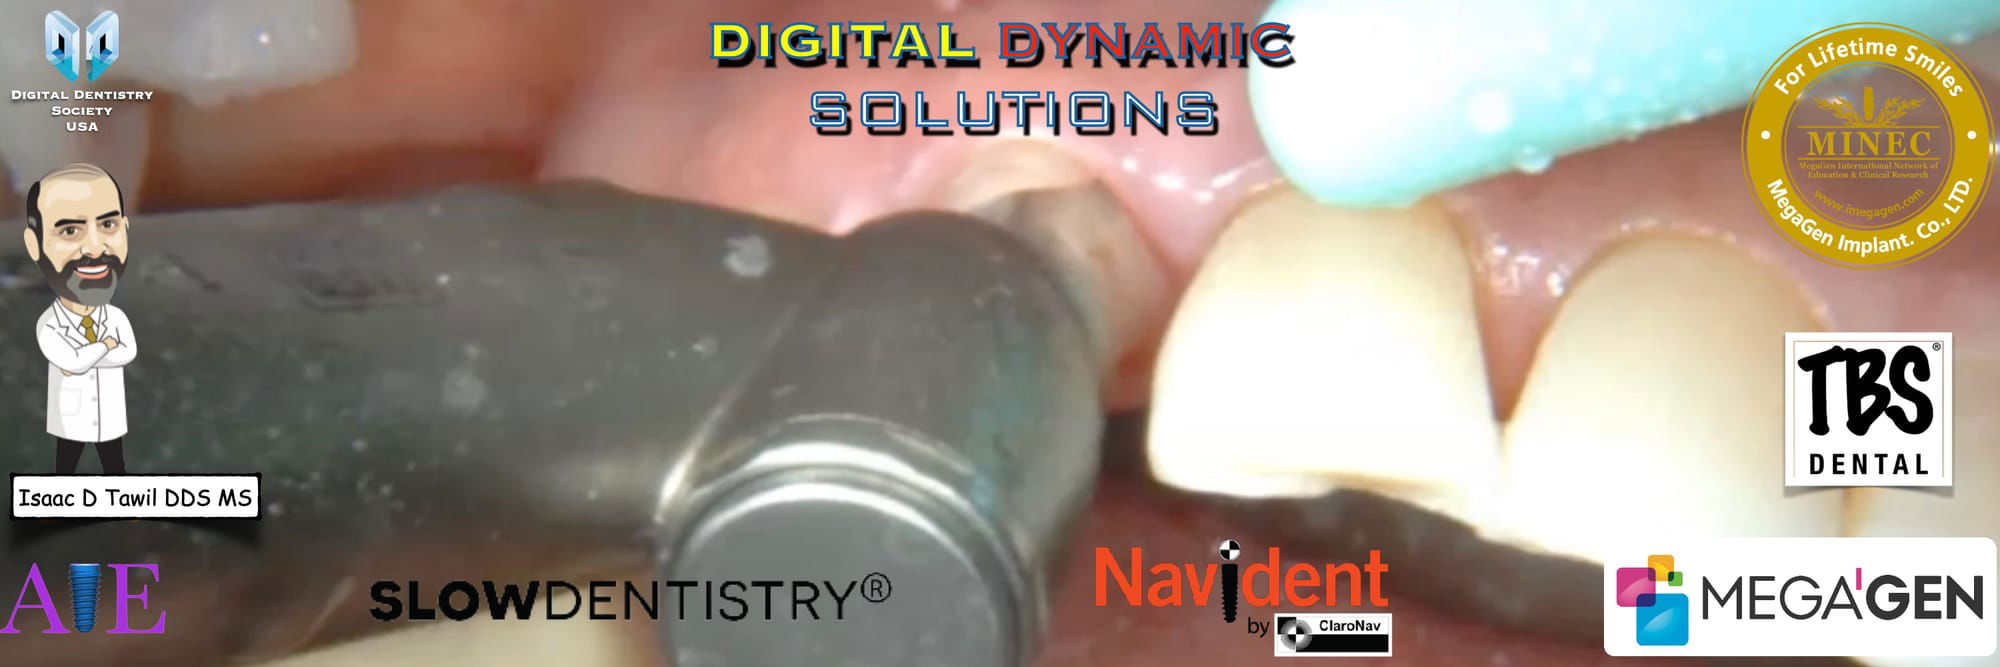 Digital Dynamic Solutions